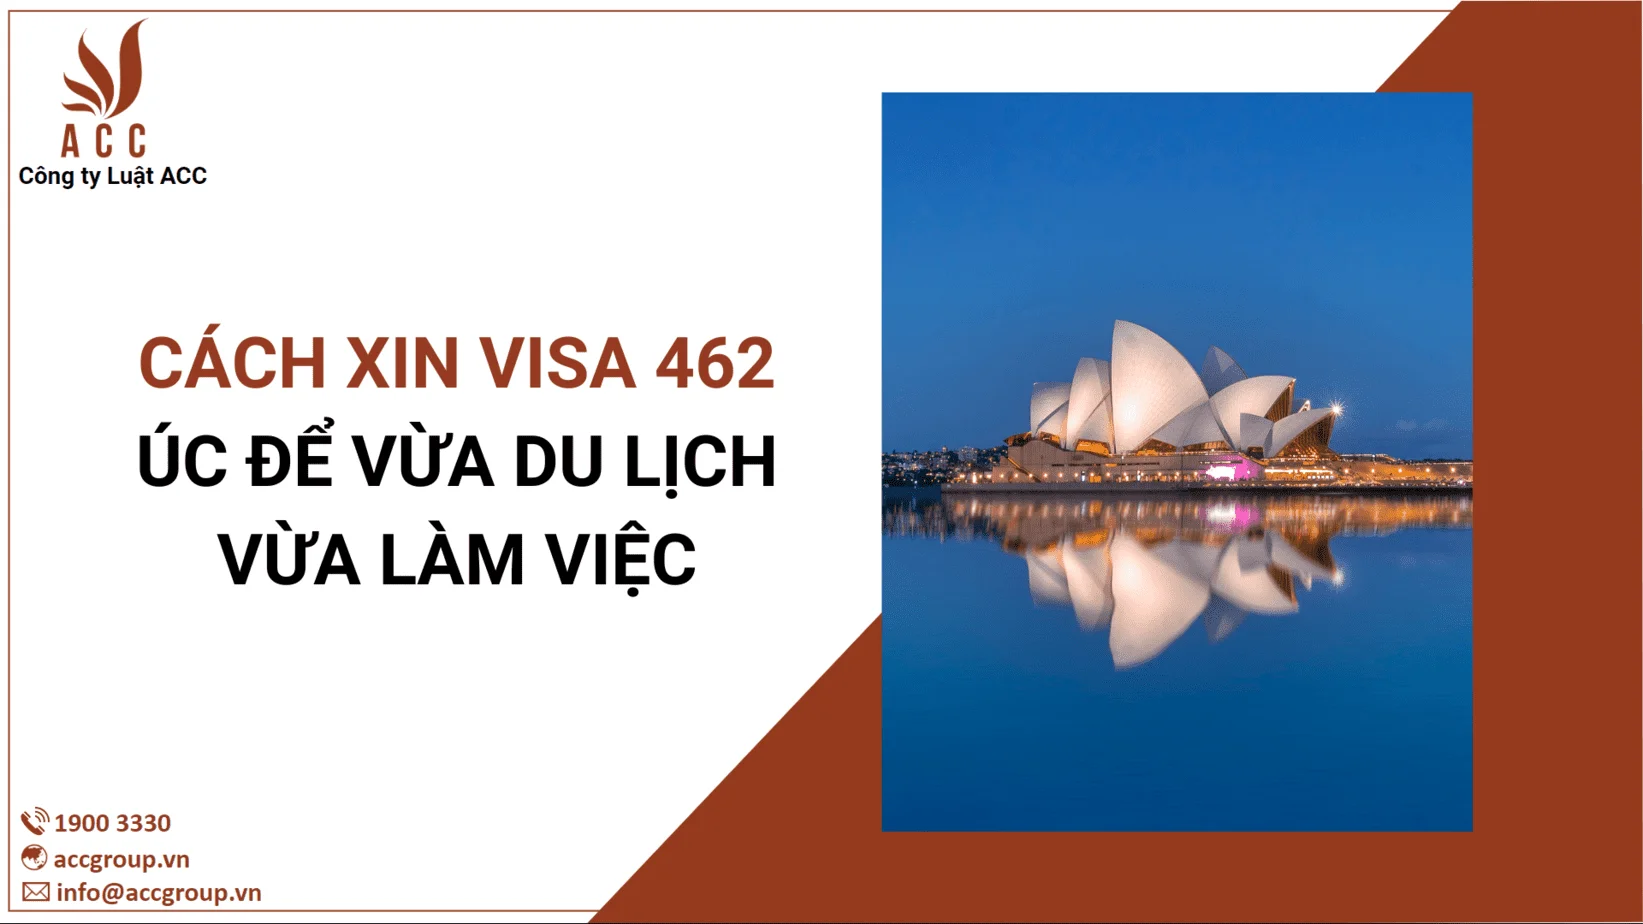 Cách xin visa 462 Úc để vừa du lịch vừa làm việc